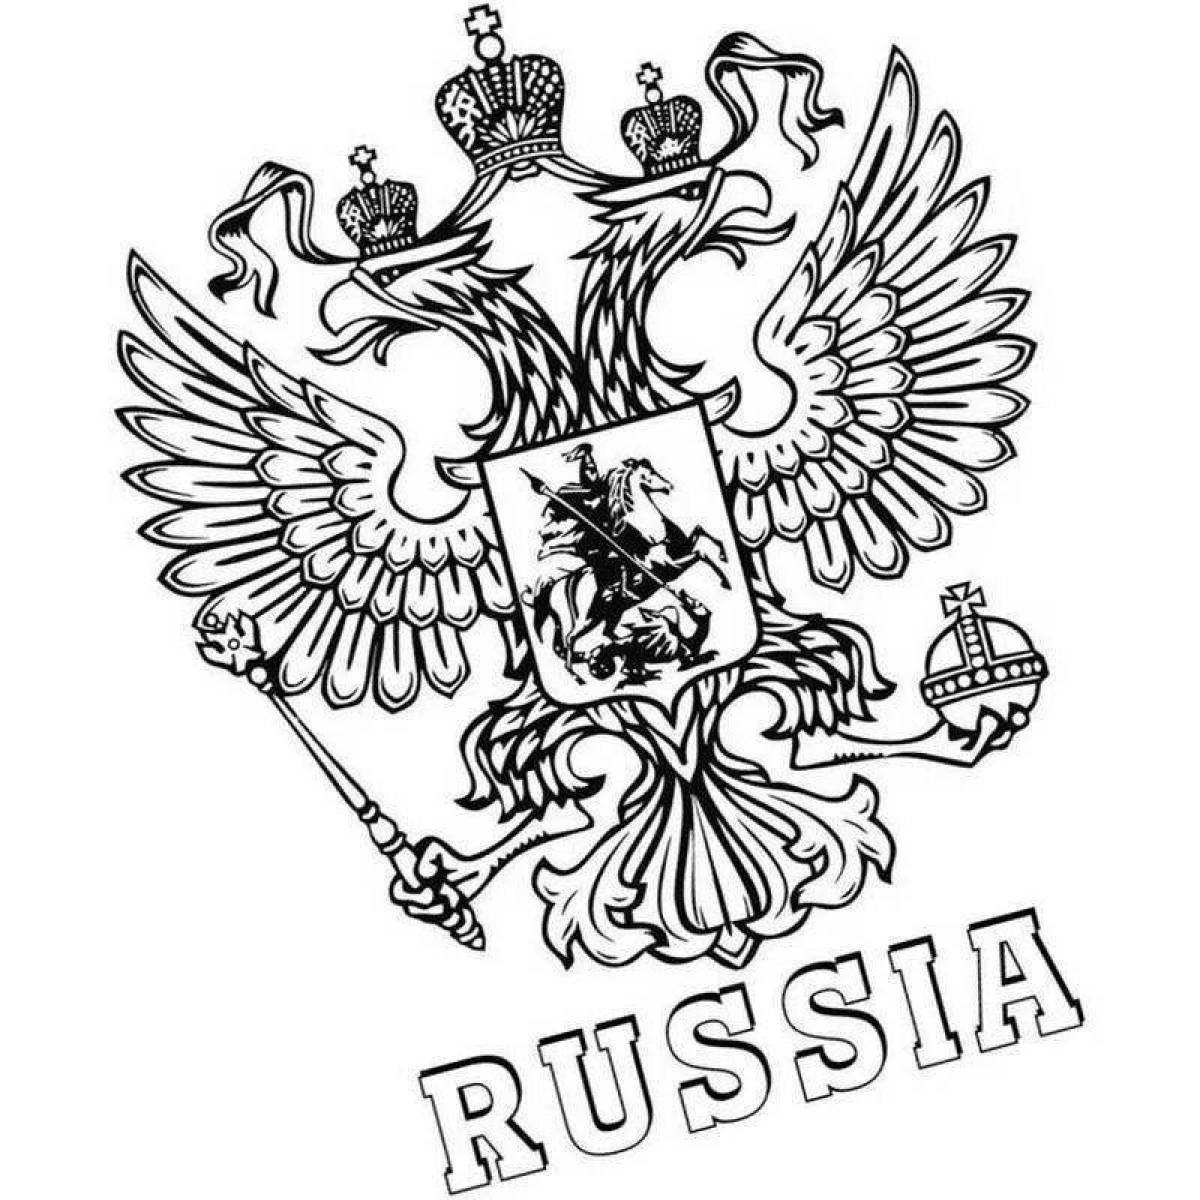 Раскраска герб России для детей